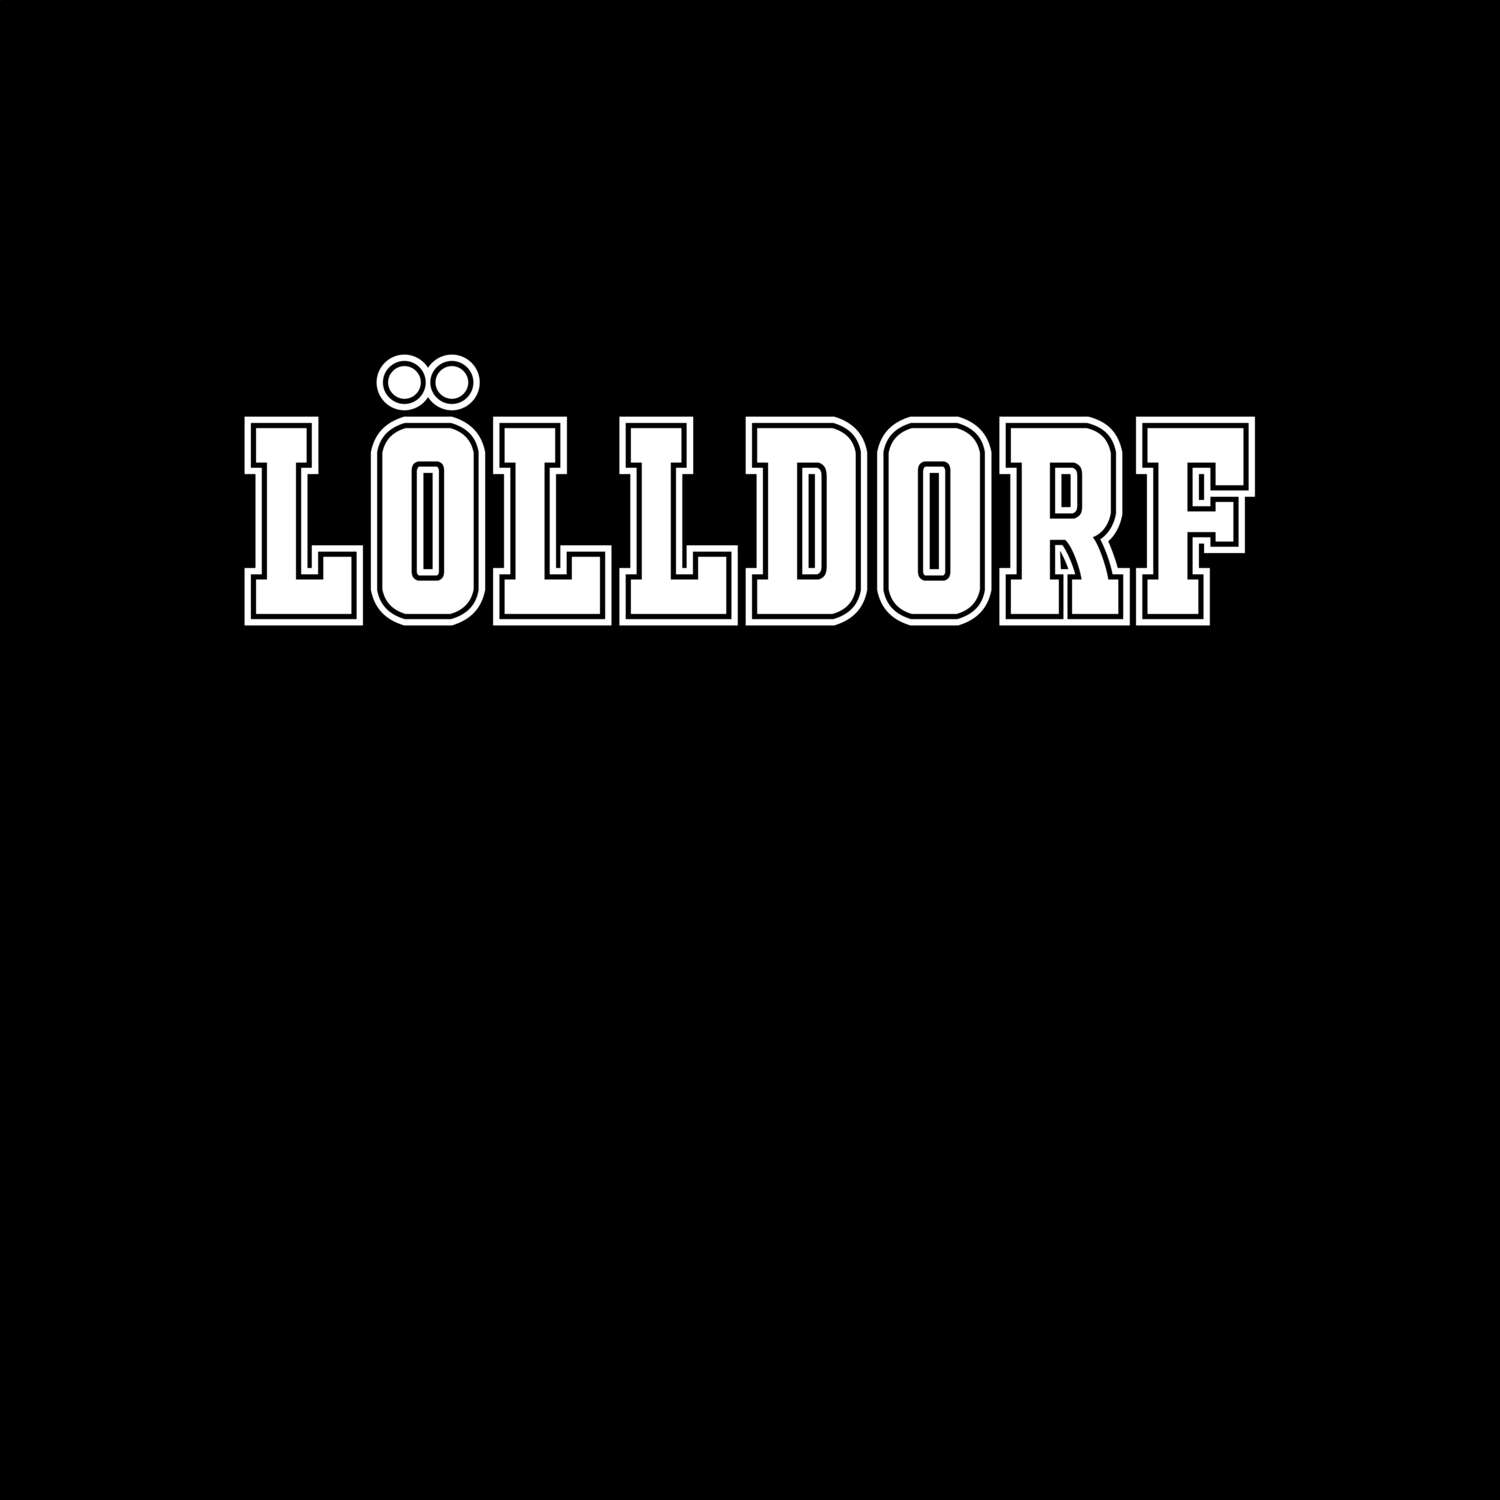 Lölldorf T-Shirt »Classic«